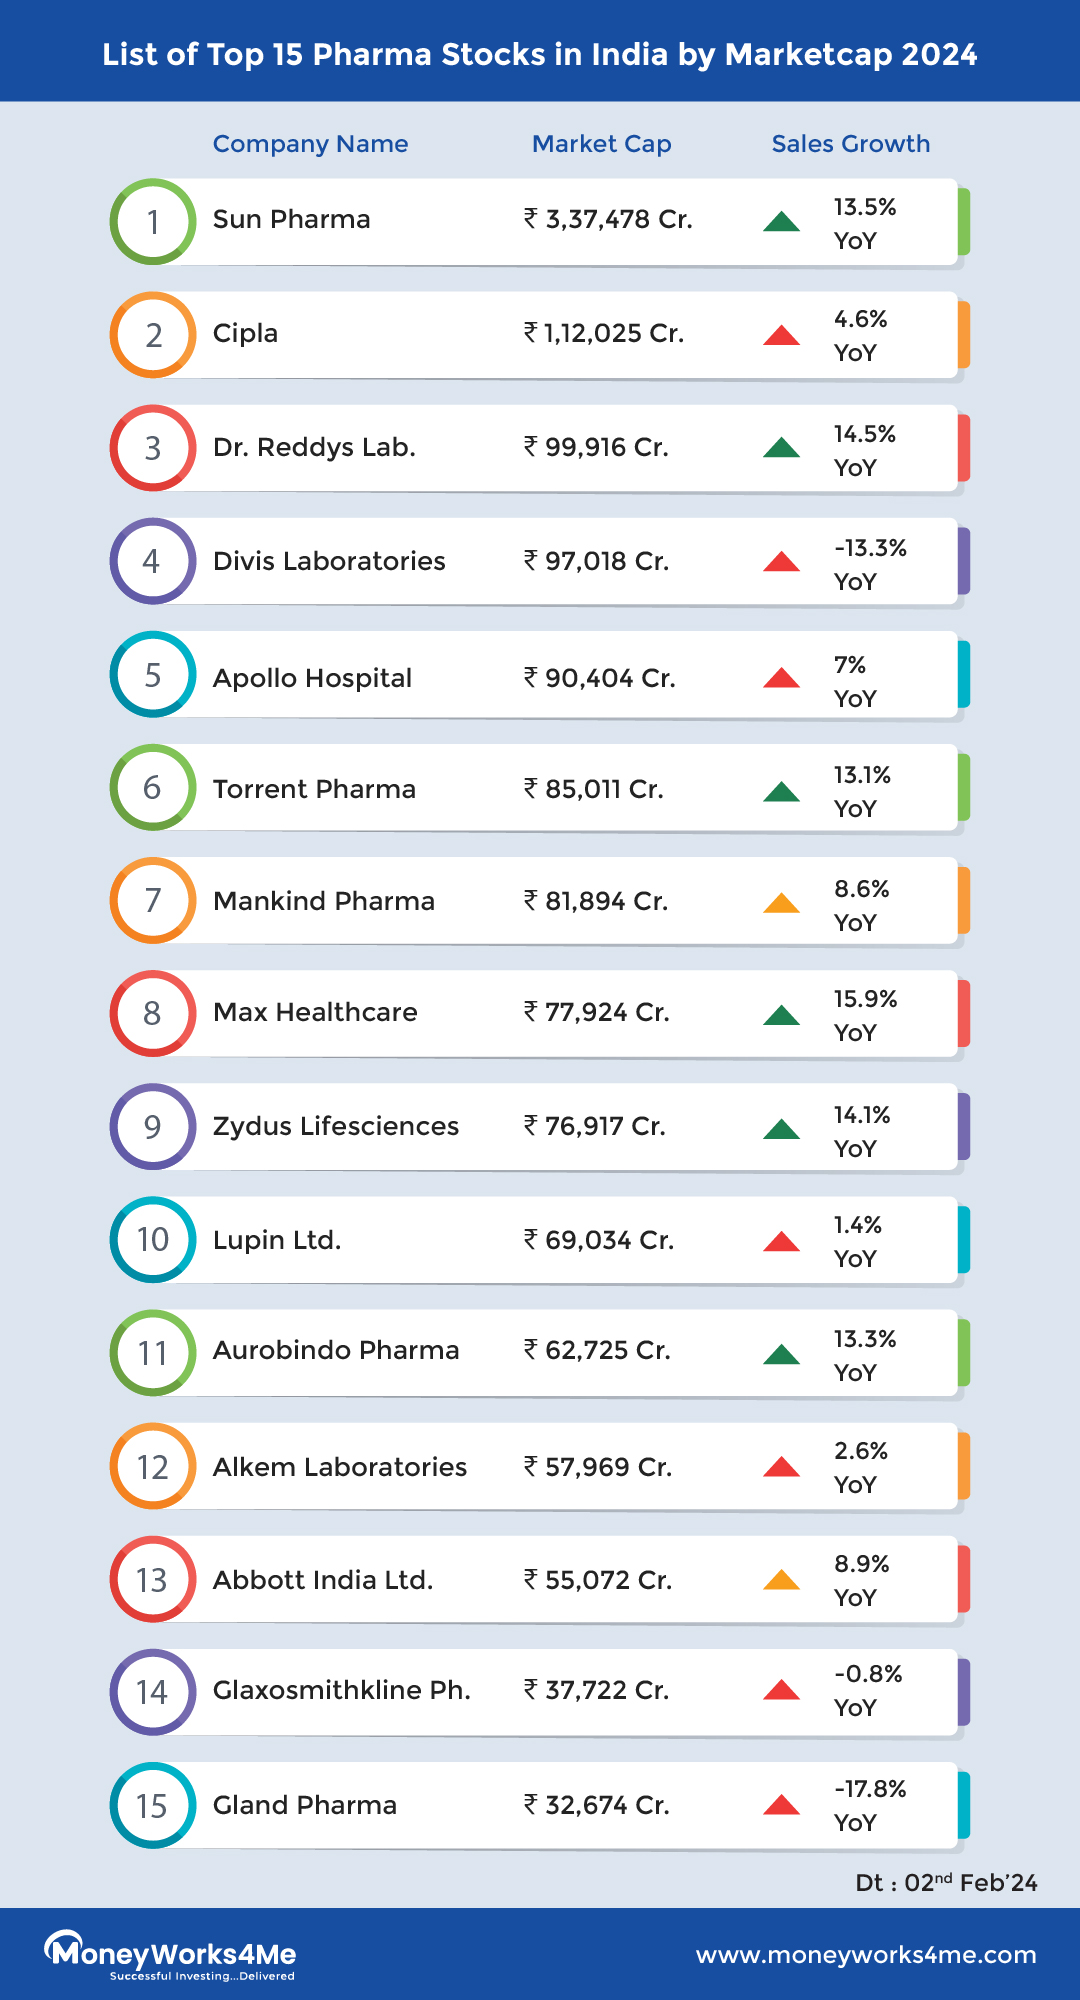 Top 15 Pharma Stocks in India